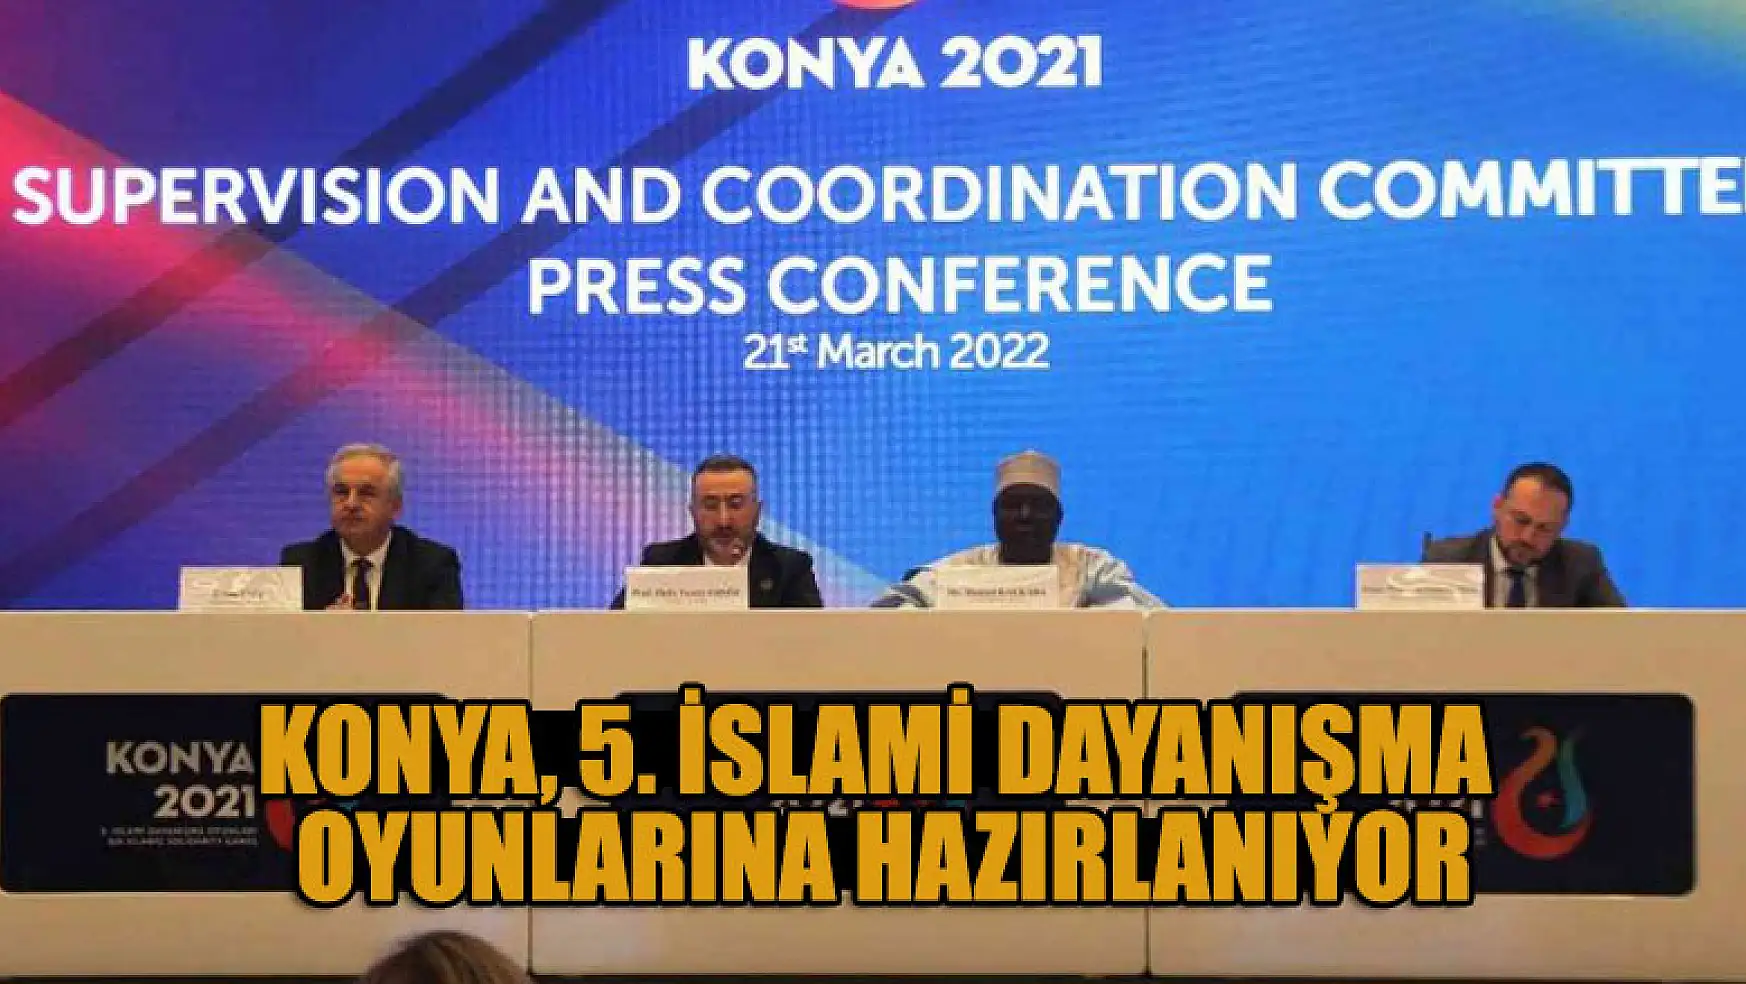 Konya, 5. İslami Dayanışma Oyunlarına hazırlanıyor